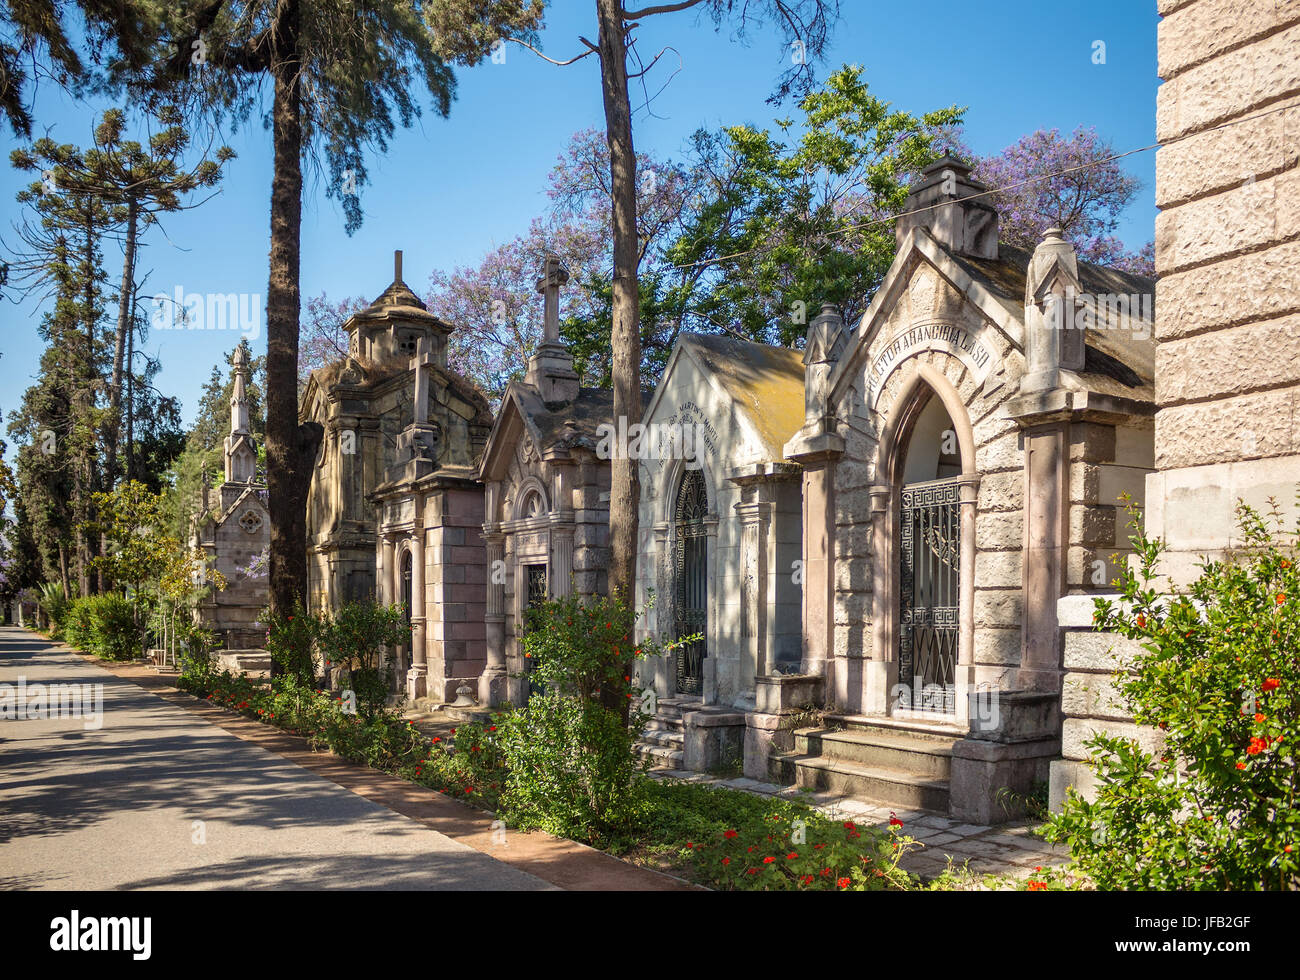 SANTIAGO, Cile - 11 novembre 2016: Cripte di famiglia a Santiago Cimitero generale (Cementerio General de Santiago). Questo è uno dei più grandi cemeterie Foto Stock